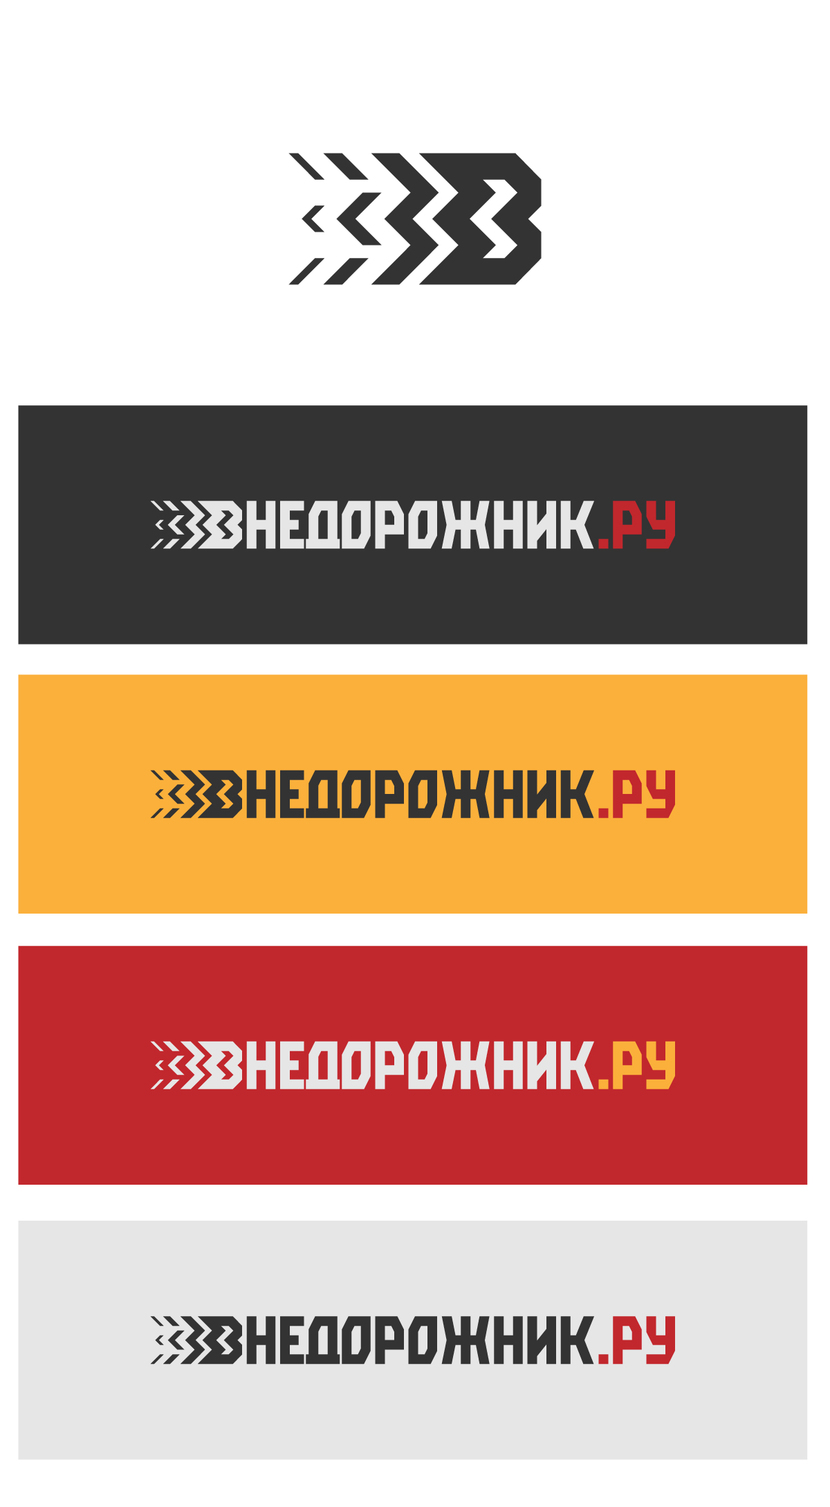 ) - Логотип для "Внедорожник.ру". Интернет-магазин оффроуд-оборудования